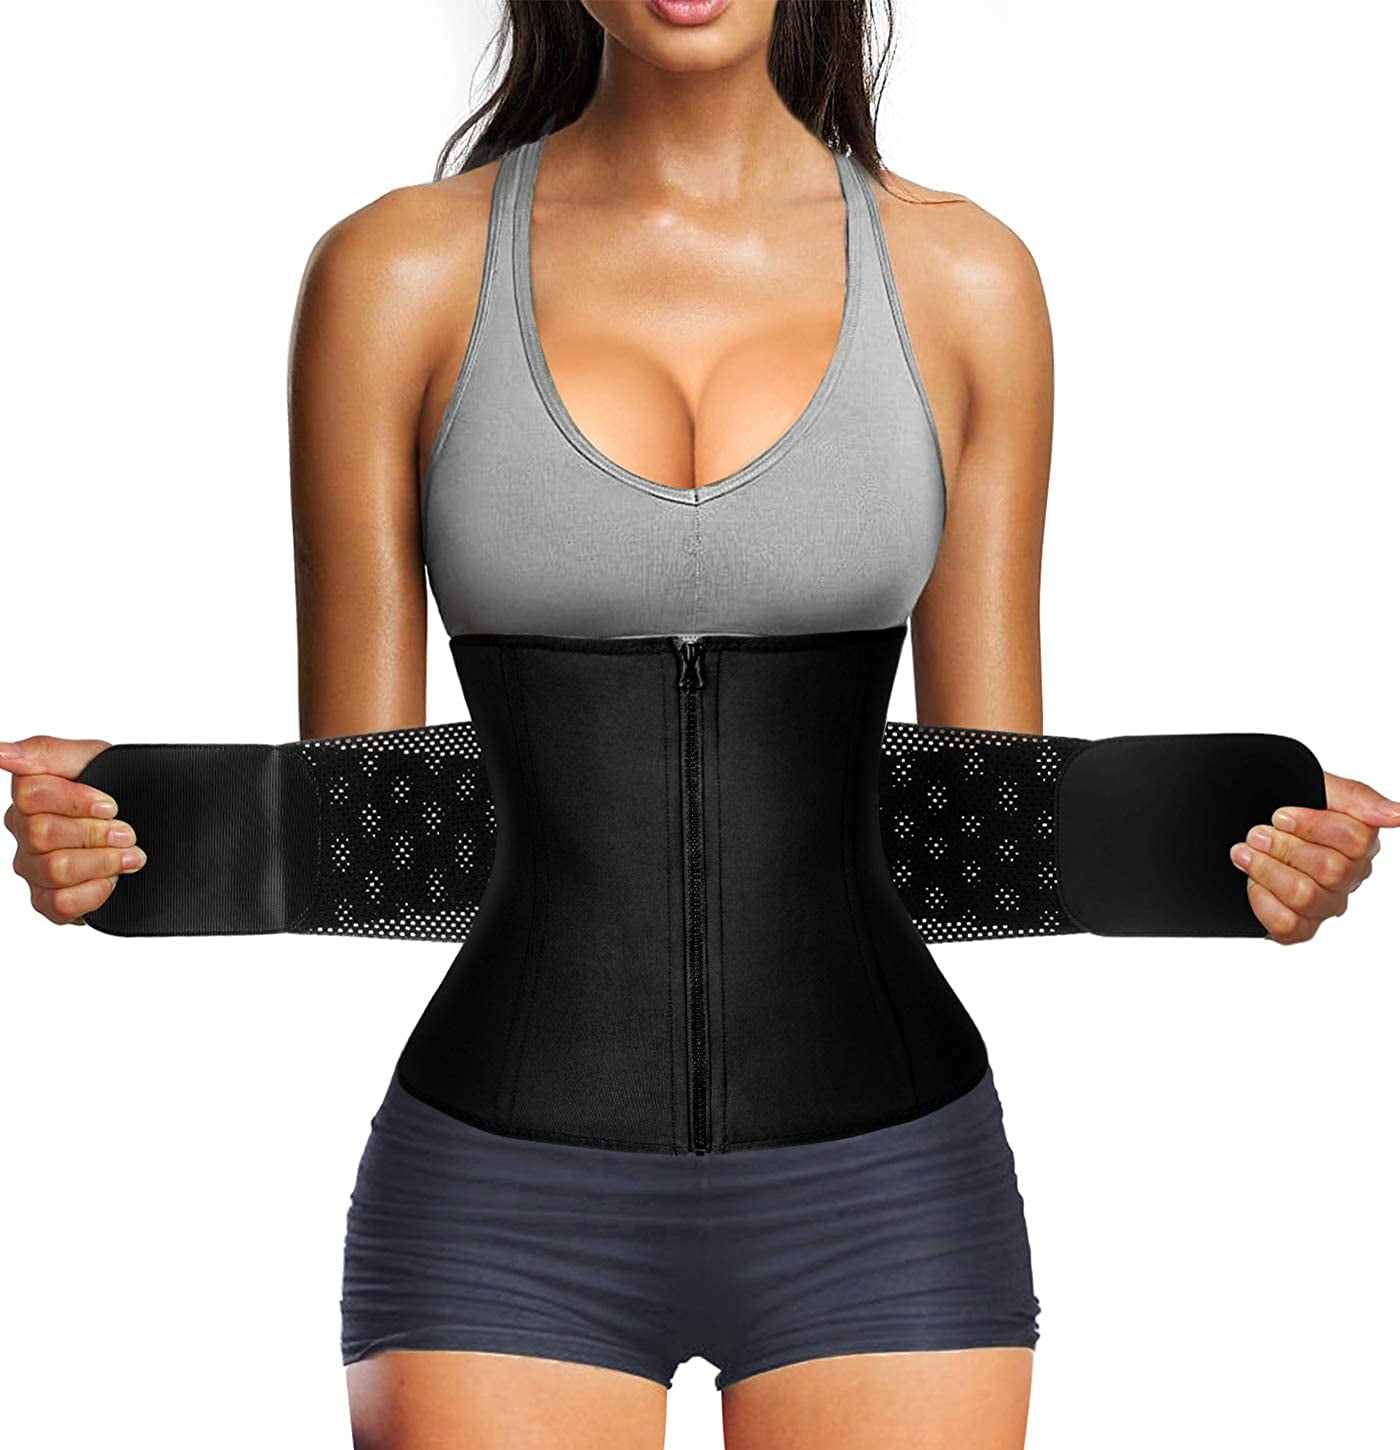 Women Waist Trainer Belt Waist Cincher Trimmer Slimming Body Shaper Belt for Sport Workout 